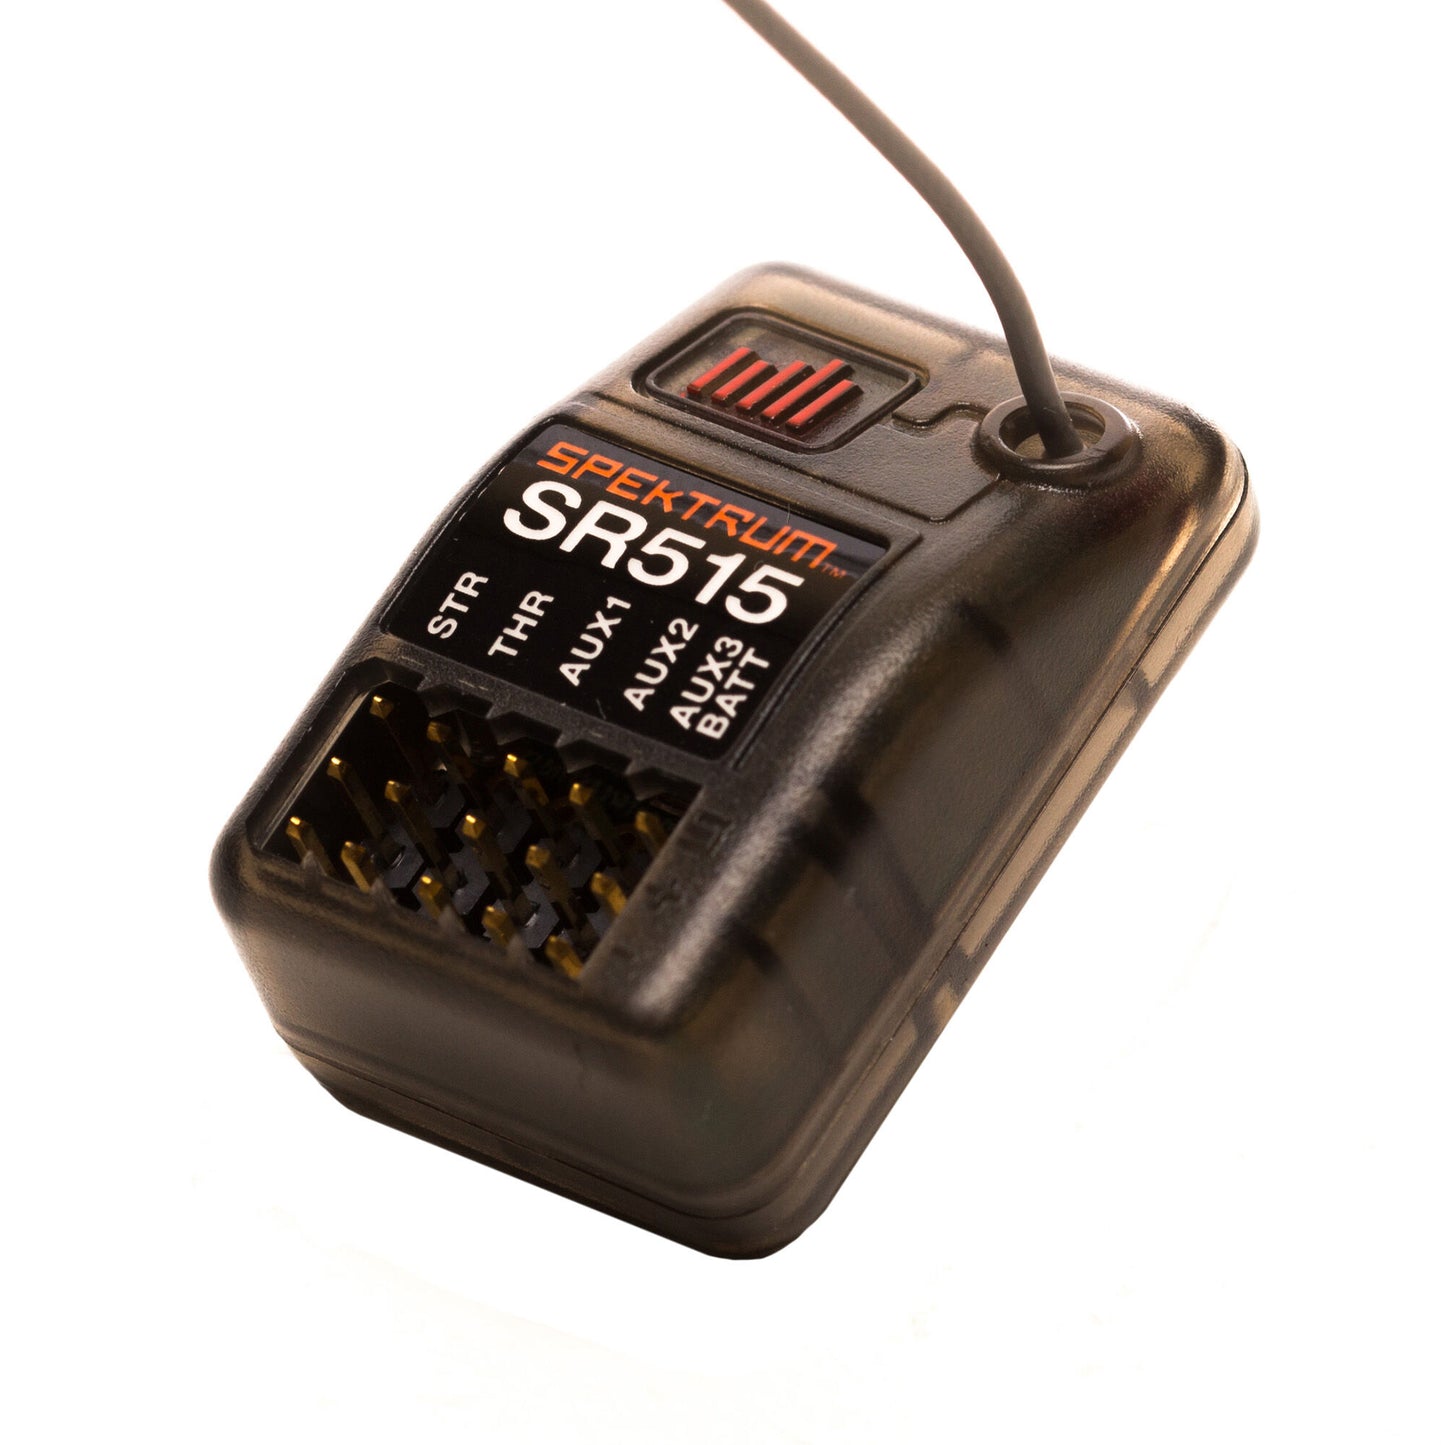 SPMSR515 Spektrum SR515 DSMR 5 Ch Sport Receiver